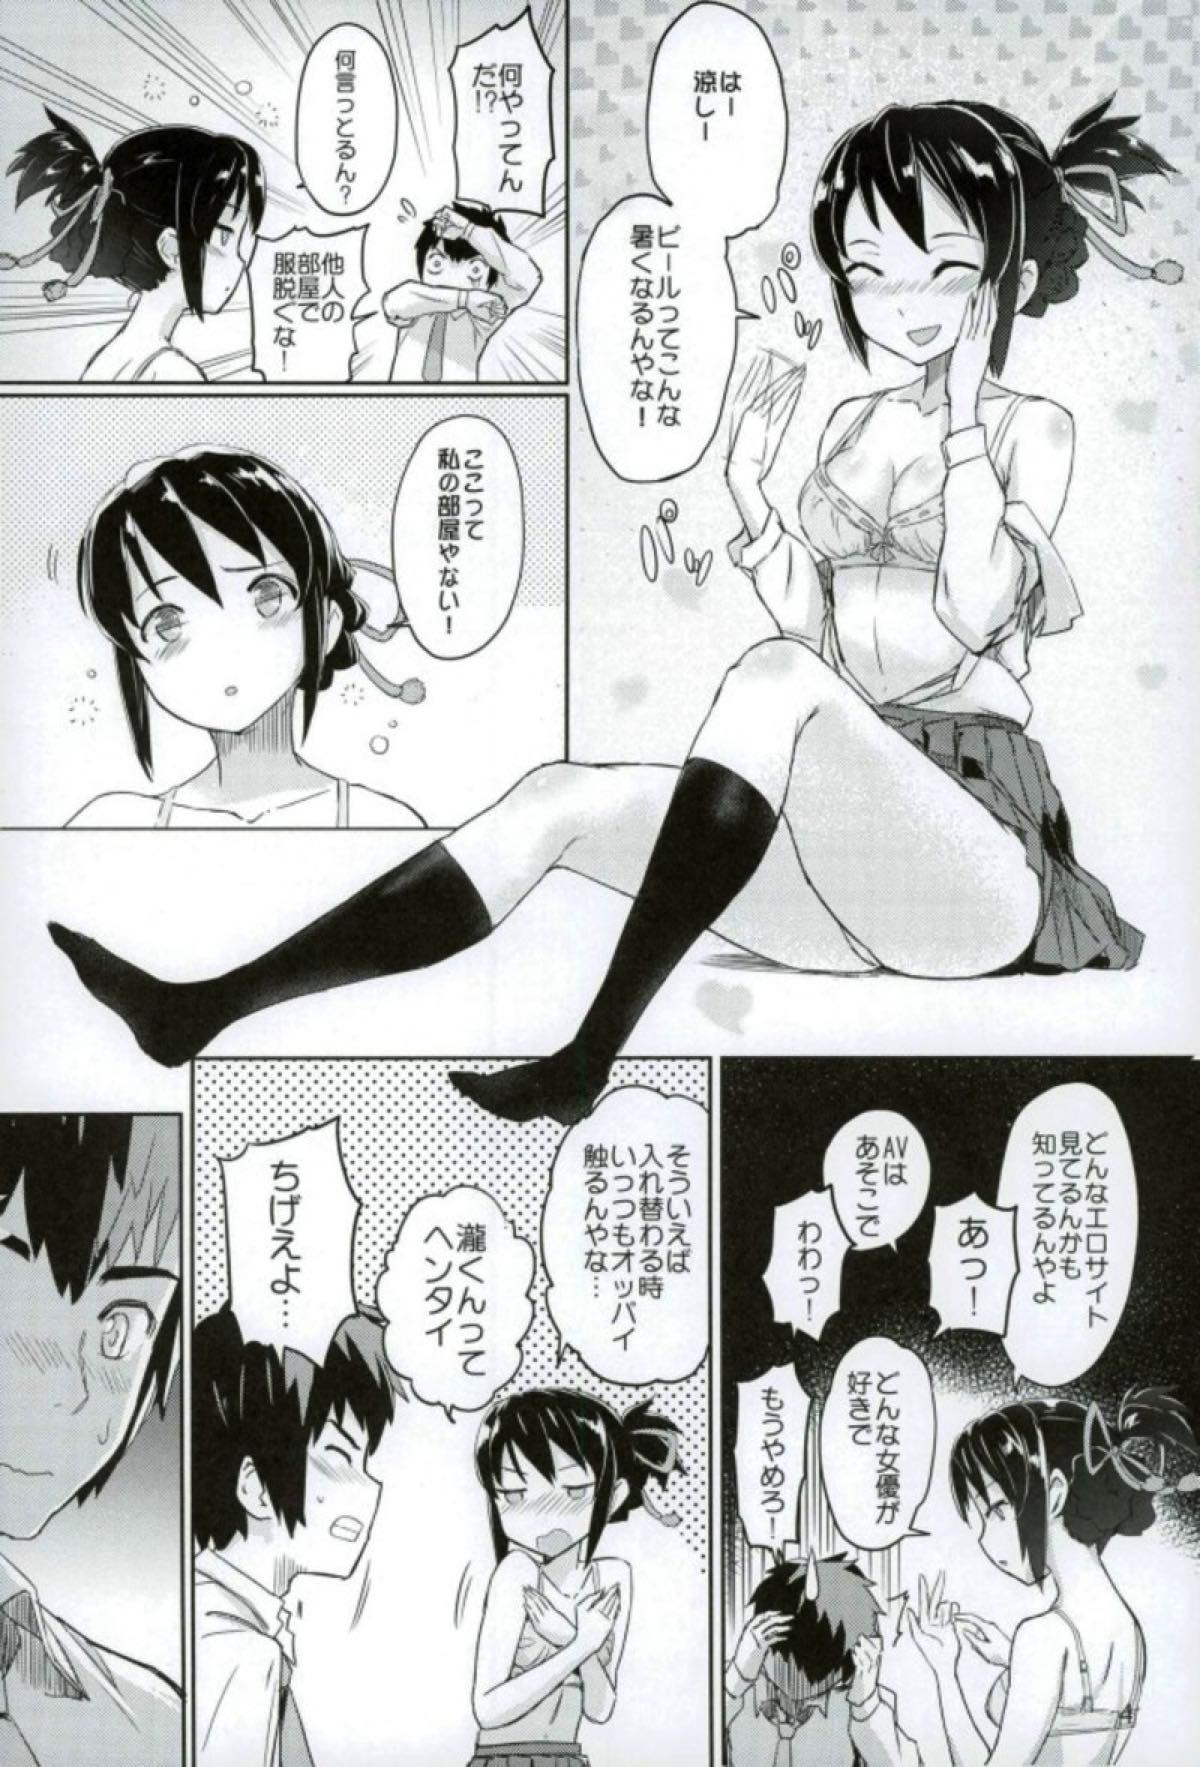 Comedor Kimi to Boku no Musubi - Kimi no na wa. Asses - Page 5